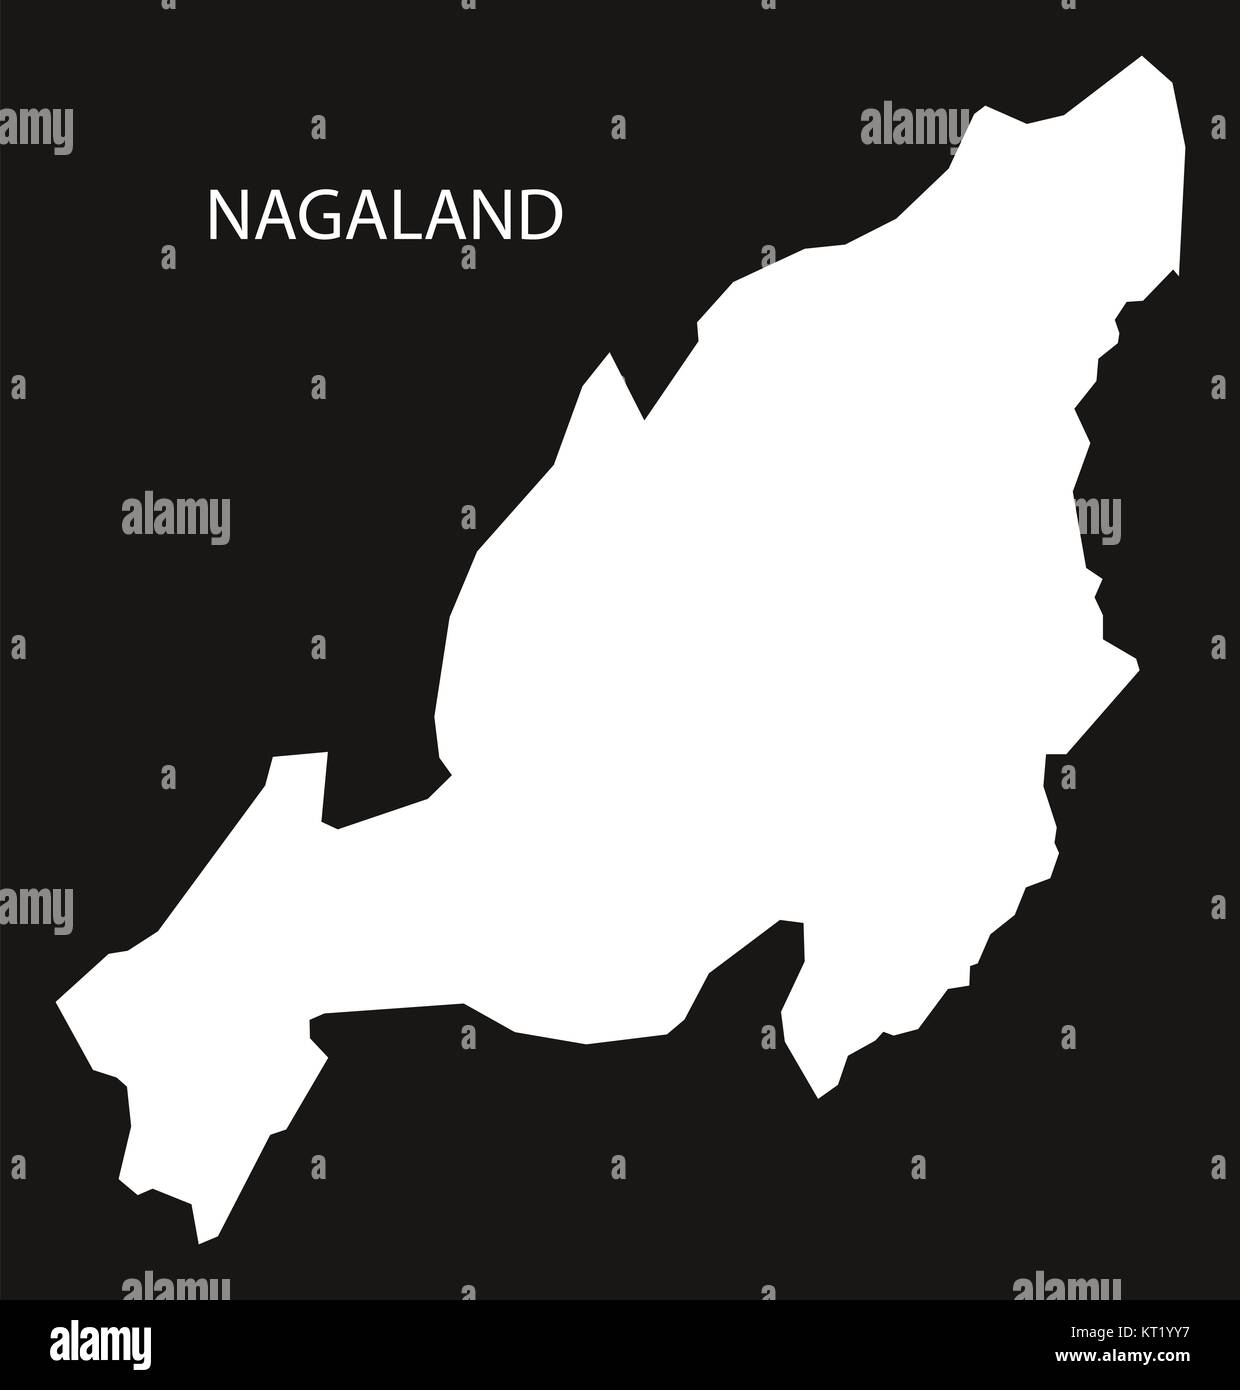 Nagaland India Map black inverted Stock Photo